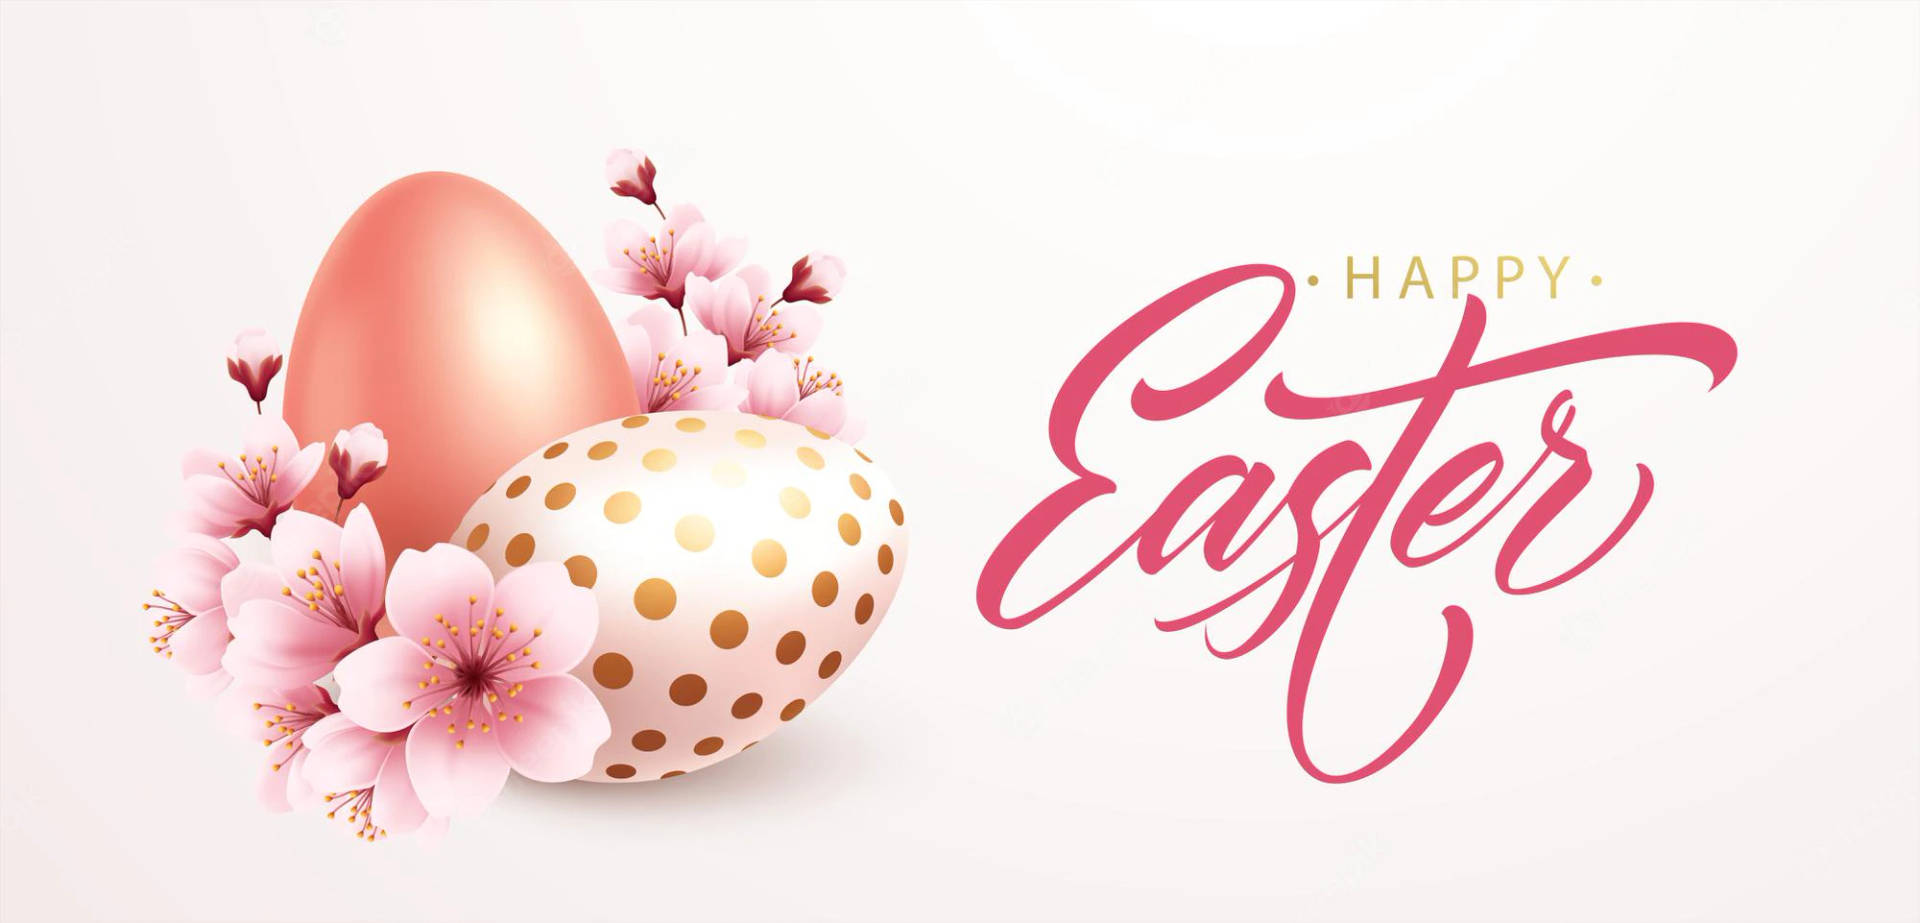 Easter Desktop Background Eggs Wallpaper